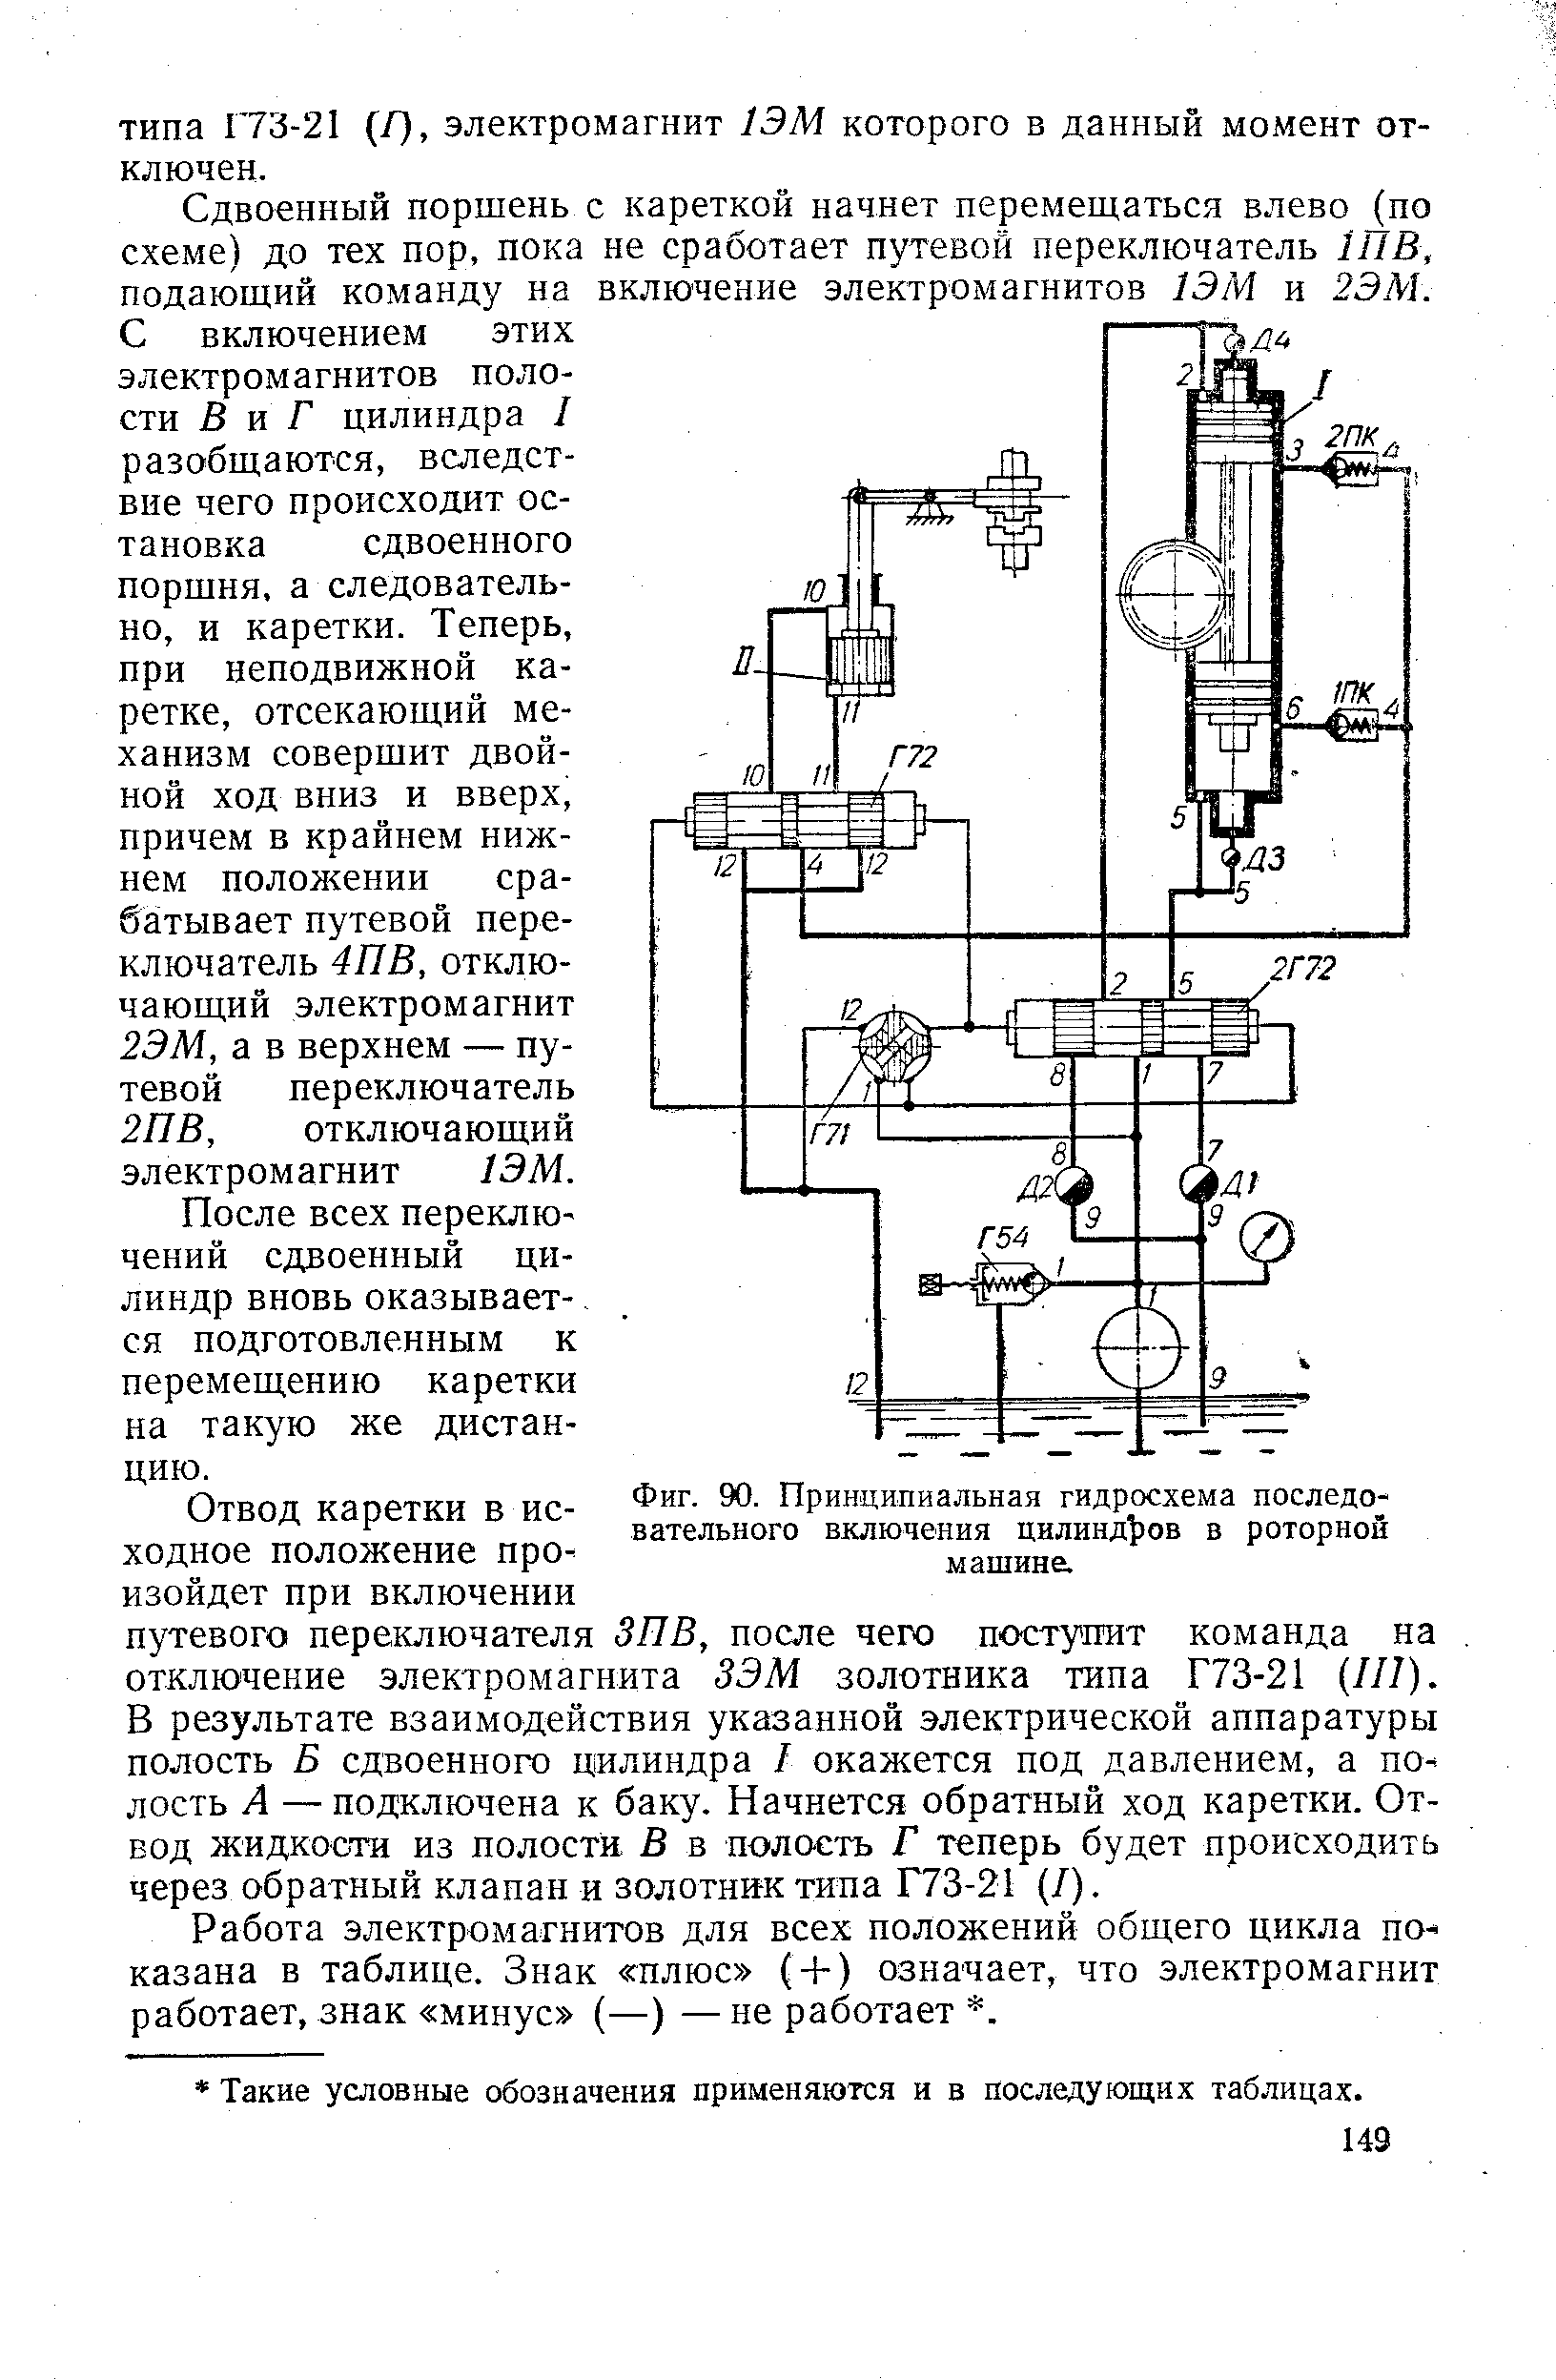 Фиг. 90. Принципиальная гидросхема последовательного включения цилиндров в роторной машине.
